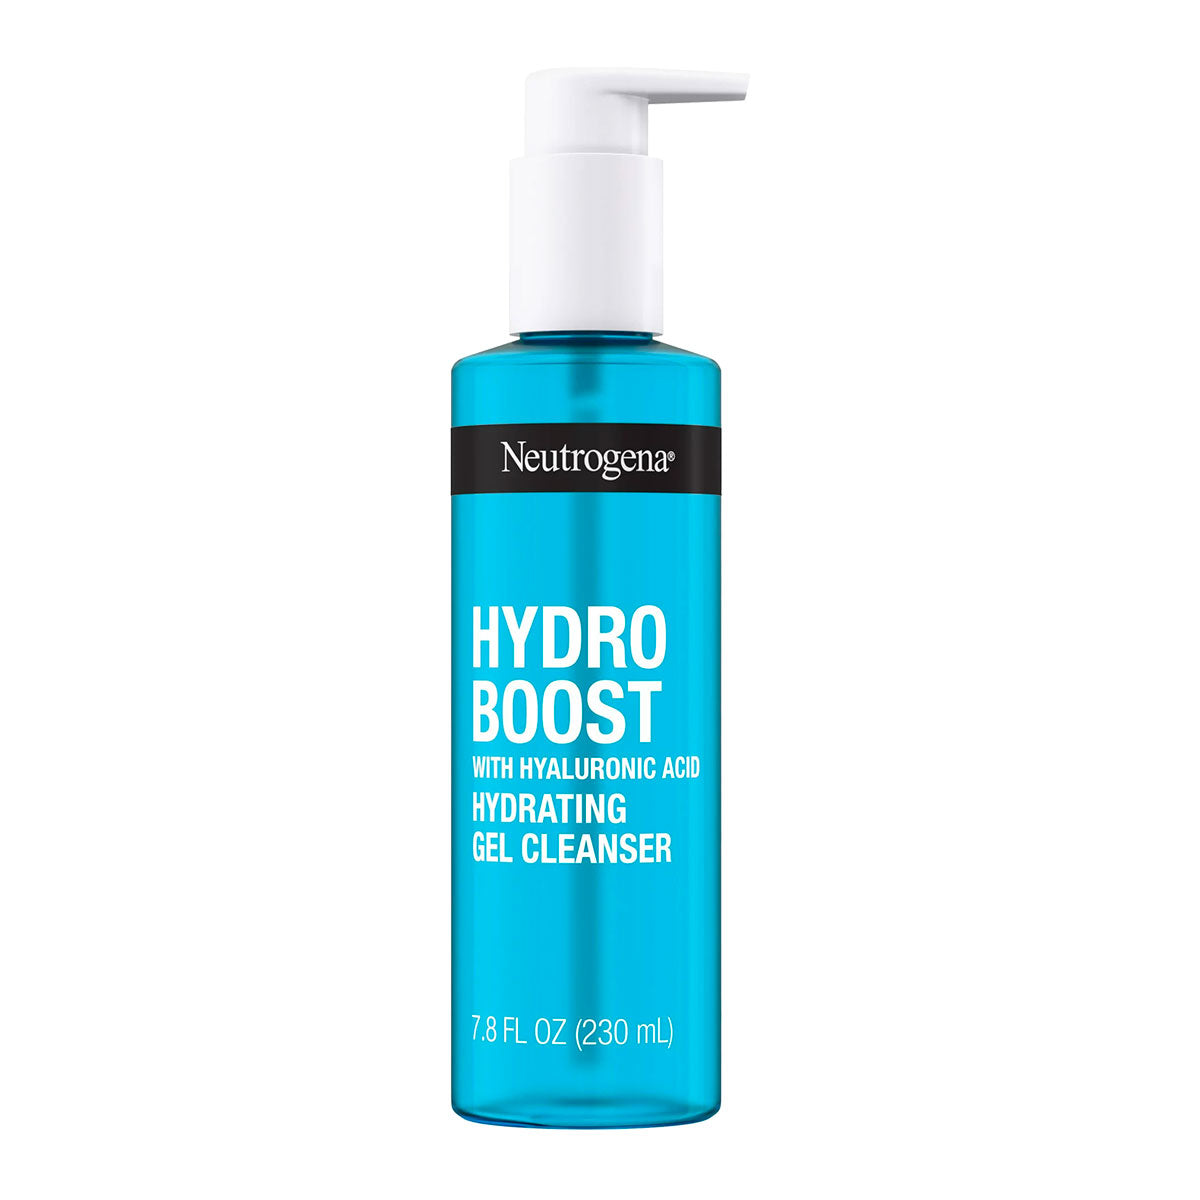 Neutrogena Hydro Boost Hydrating Gel Cleanser 230 ml / 7.8 oz